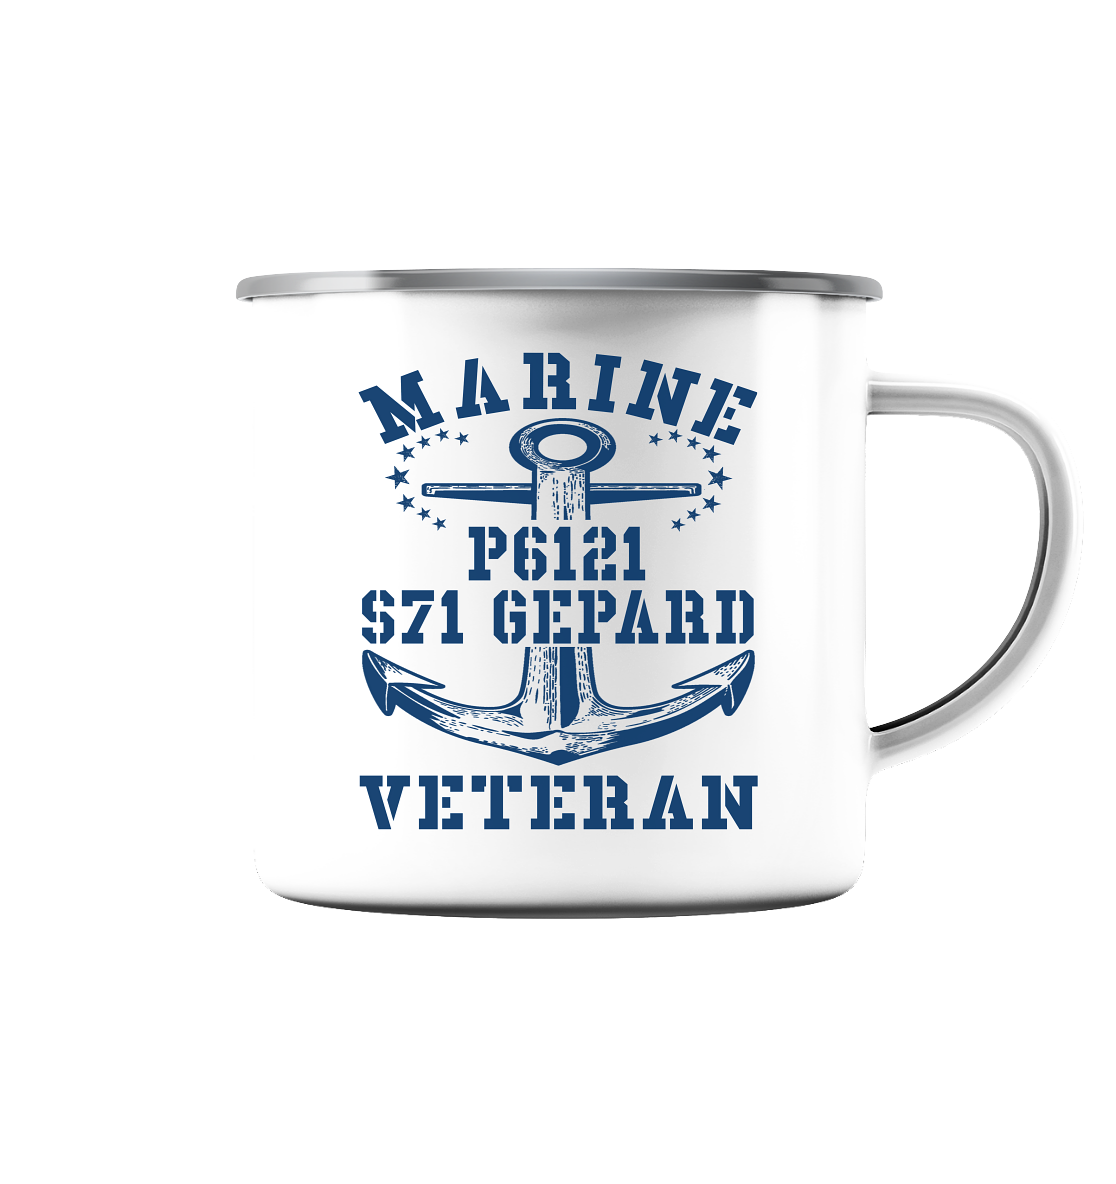 FK-Schnellboot P6121 GEPARD Marine Veteran - Emaille Tasse (Silber)